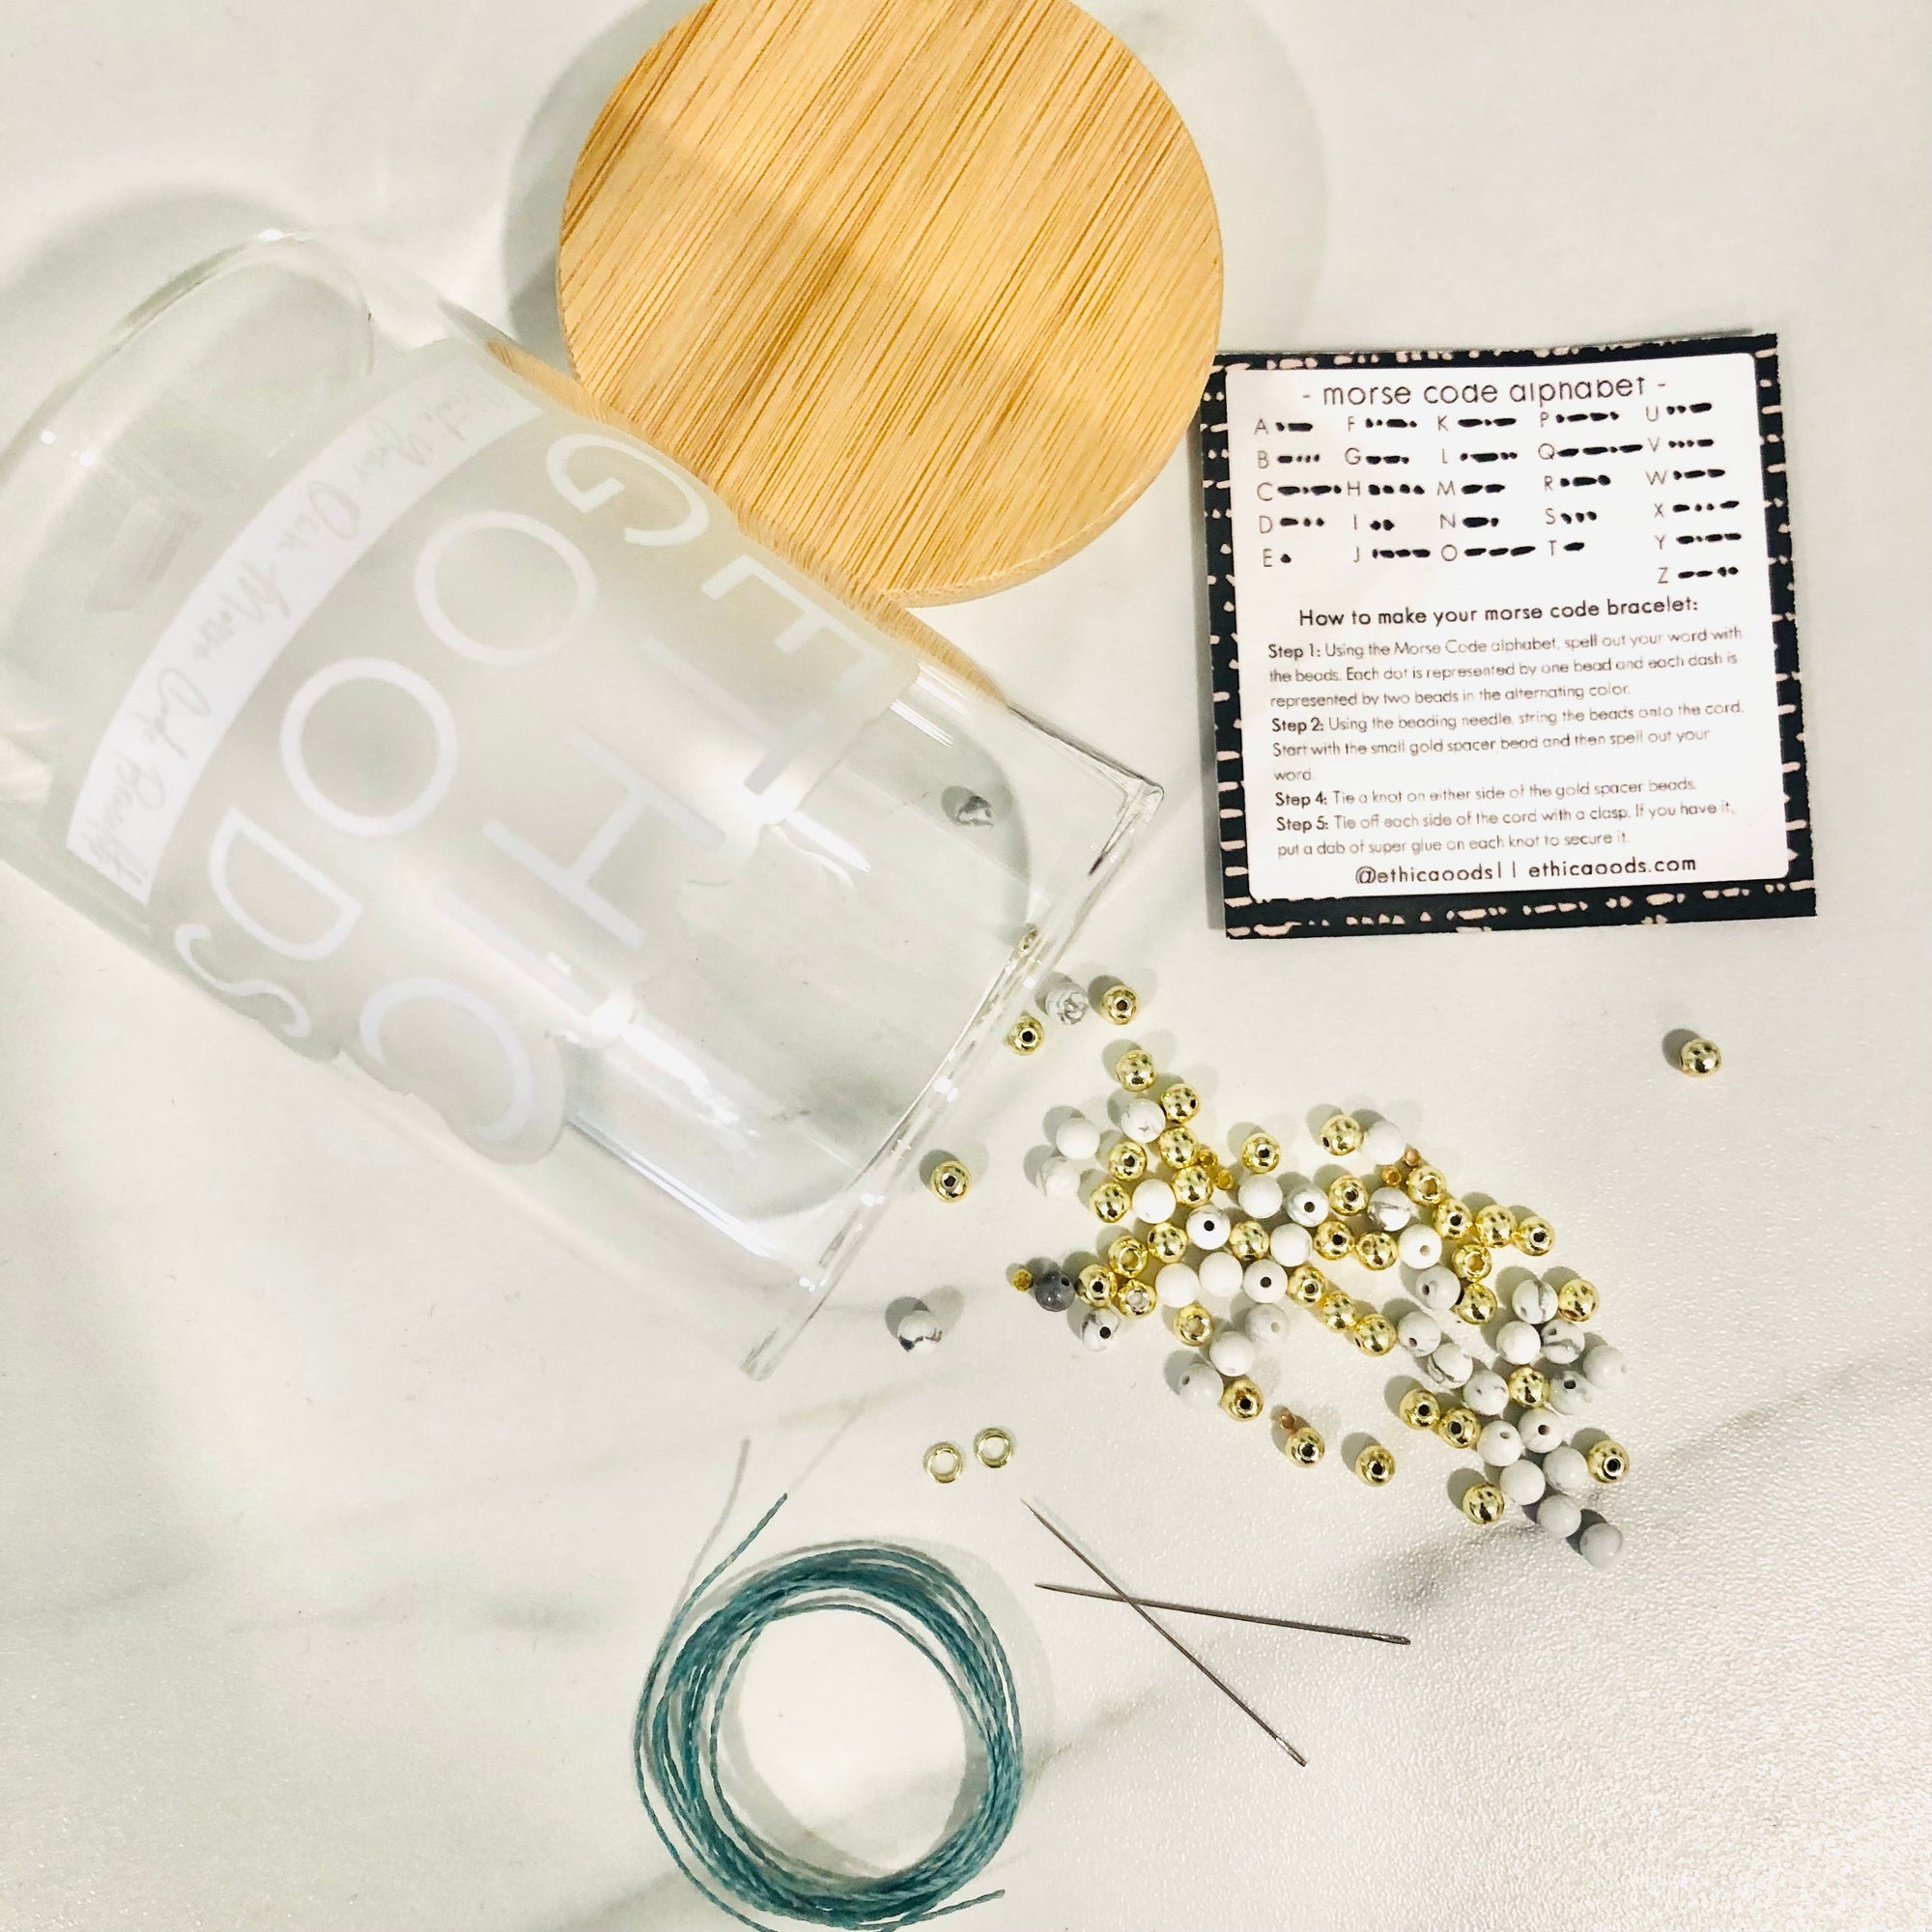 Create Your Own Morse Code Bracelet Kit